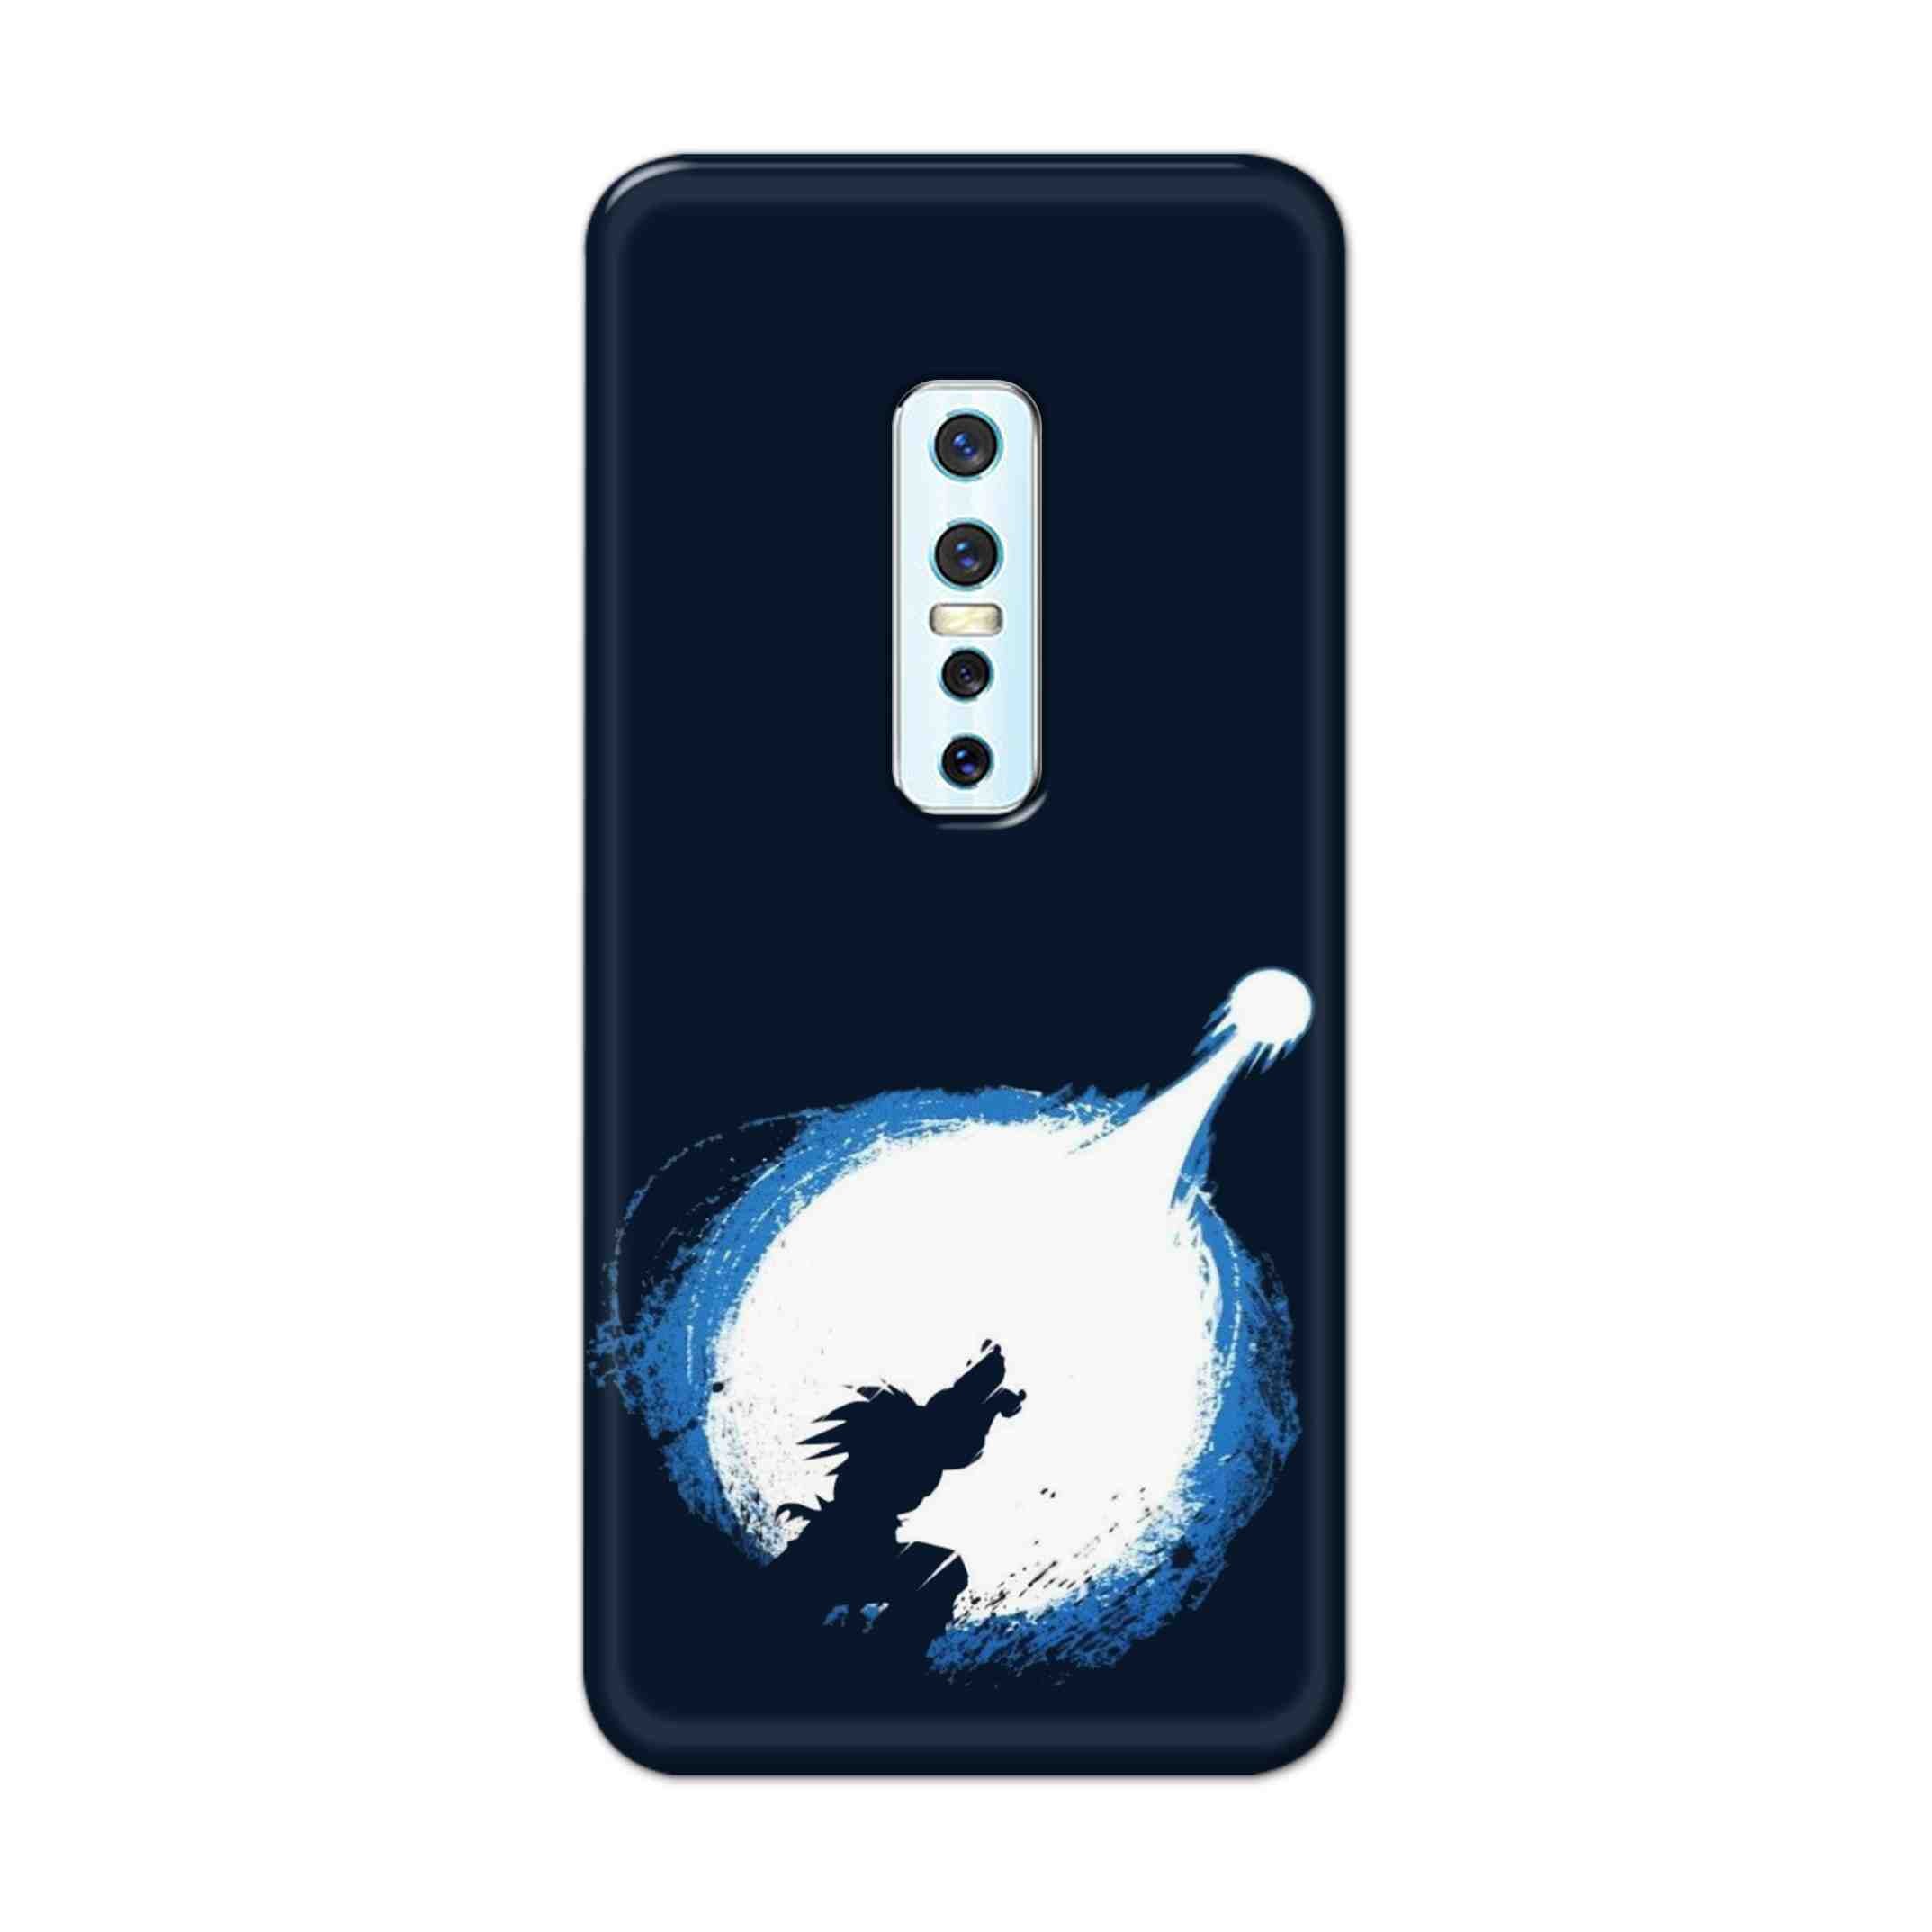 Buy Goku Power Hard Back Mobile Phone Case Cover For Vivo V17 Pro Online